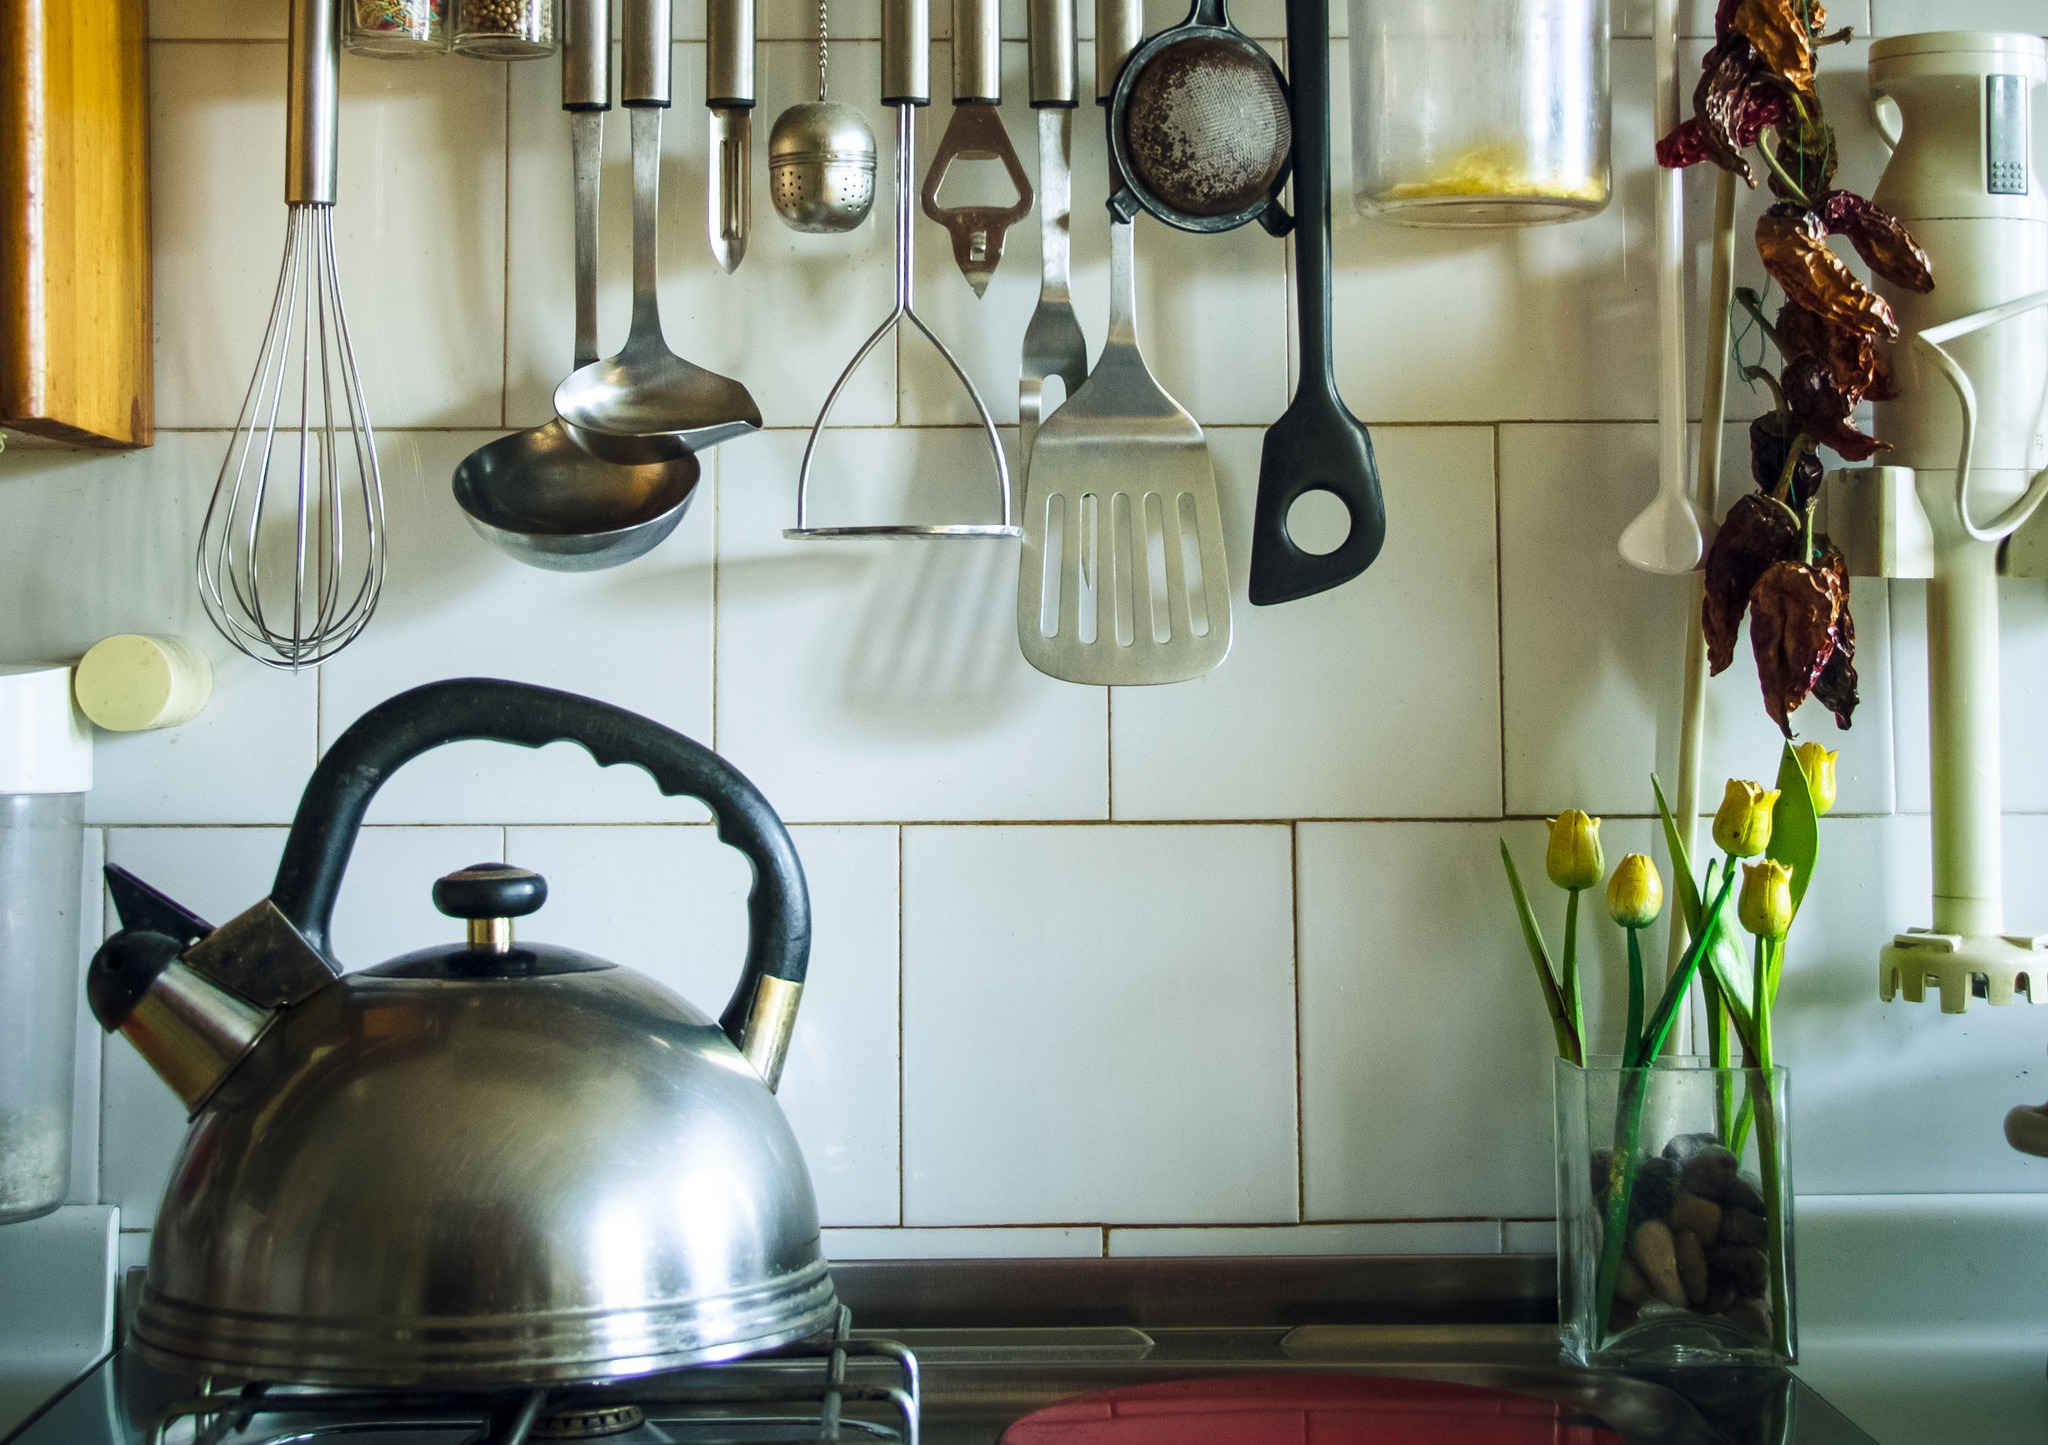 کفگیر و ملاقه - کثیف ترین لوازم آشپزخانه